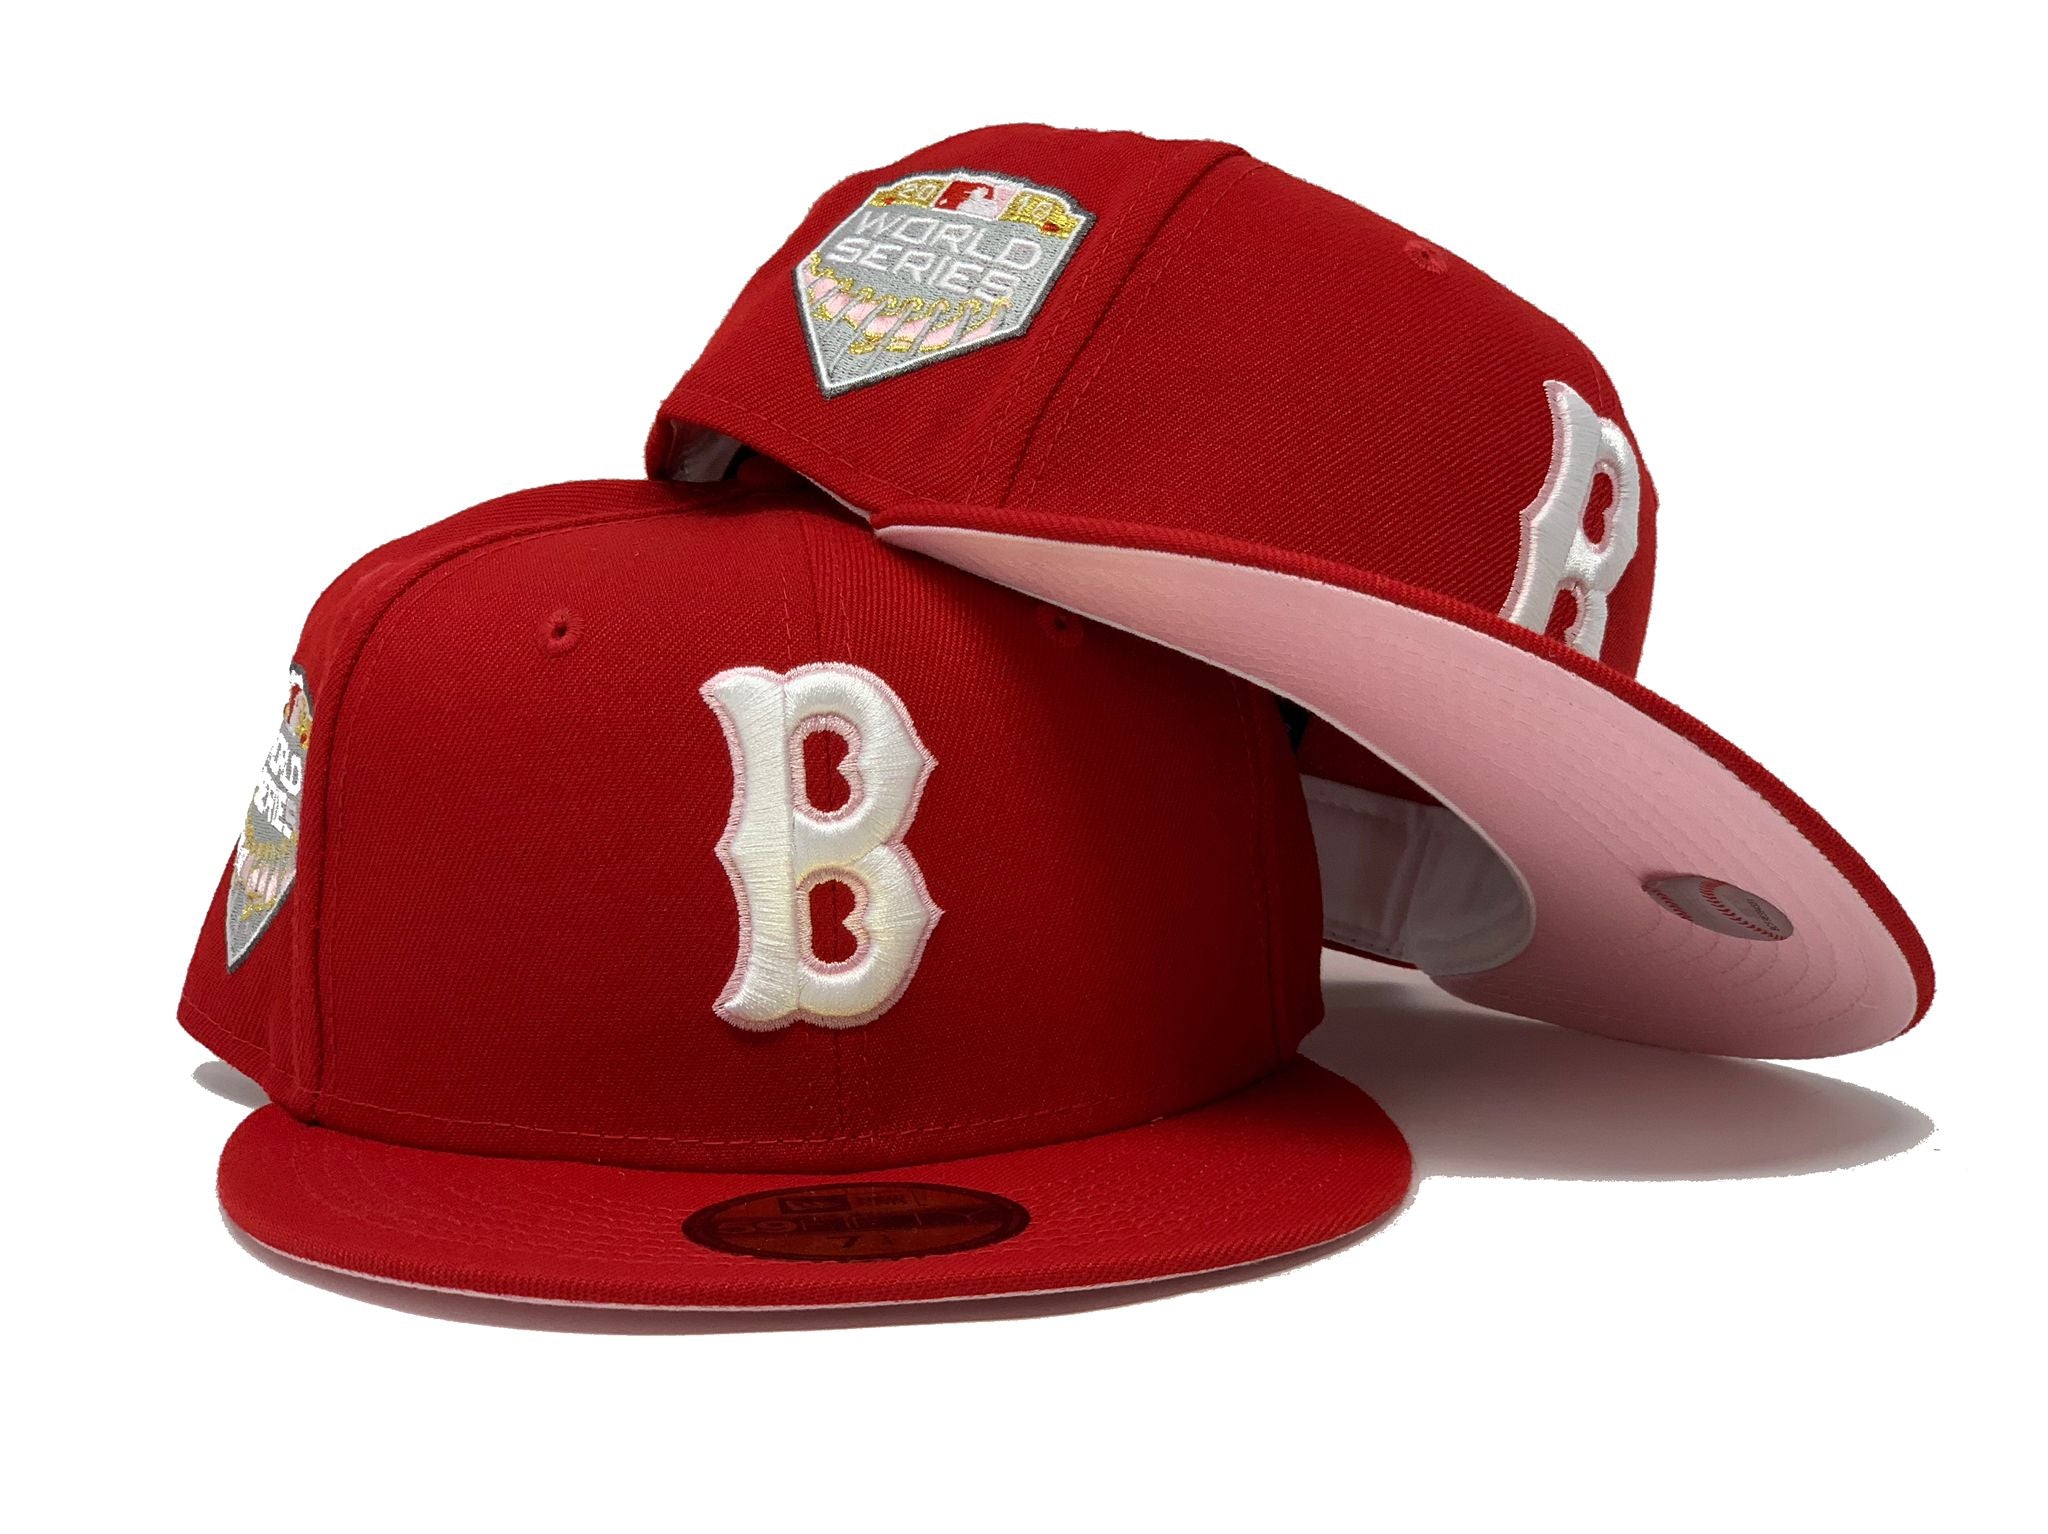 red b hat